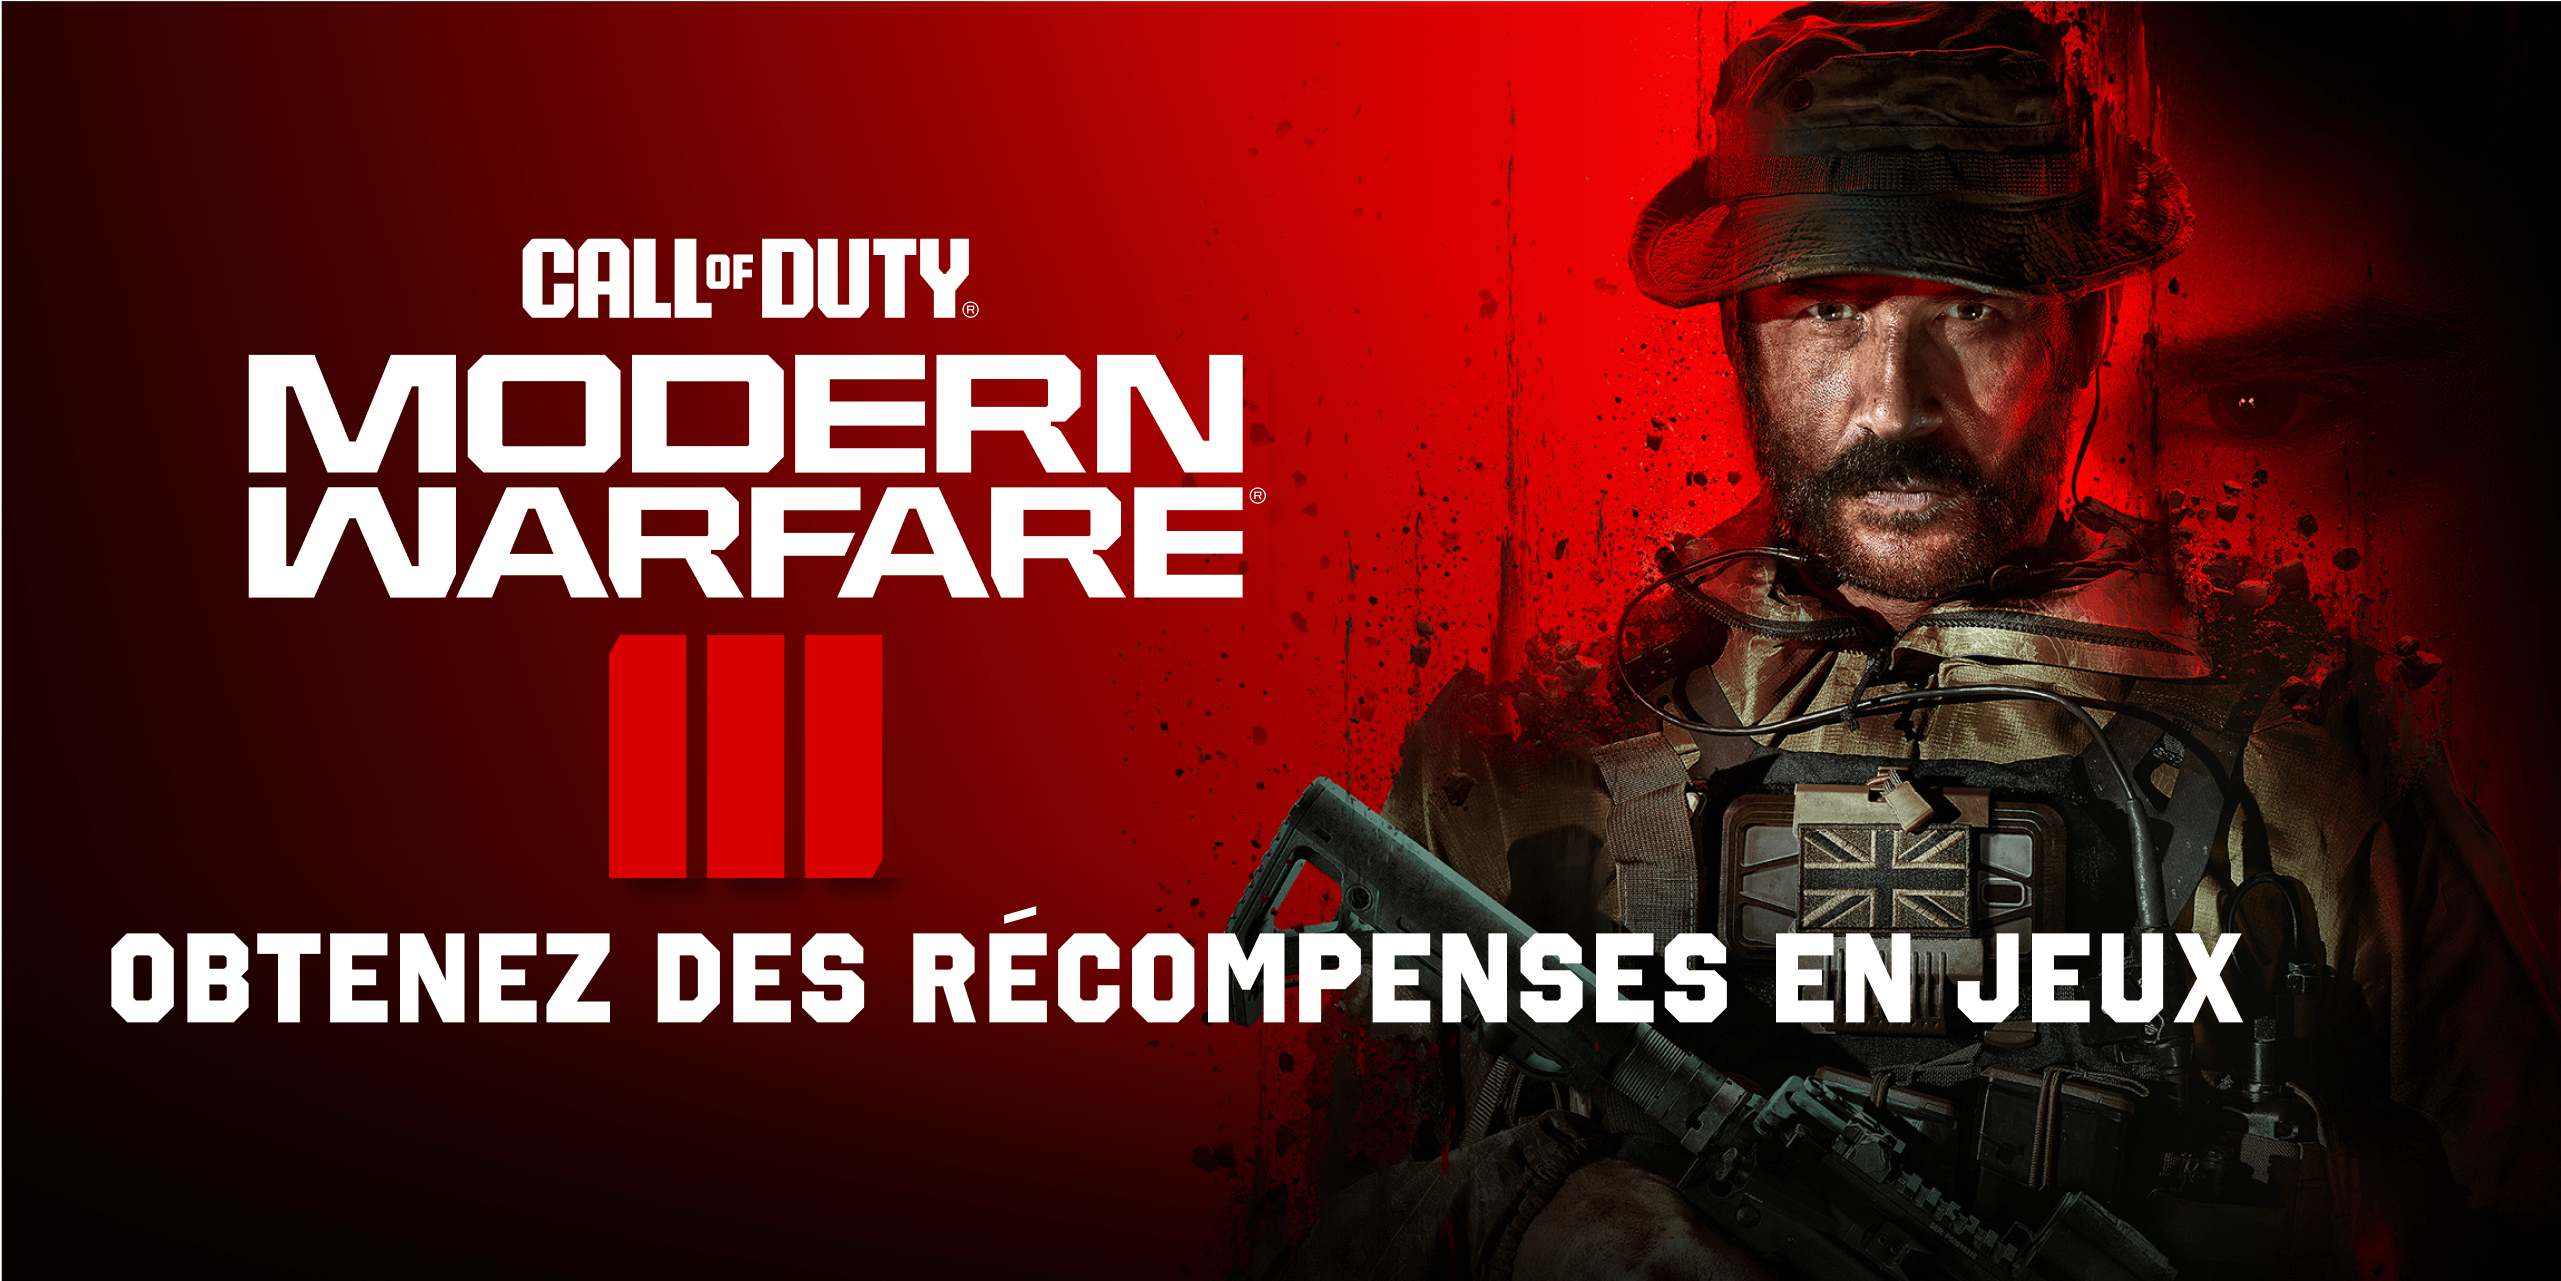 Call of Duty - Modern Warfare - OBTENEZ DES RECOMPENSES EN JEUX